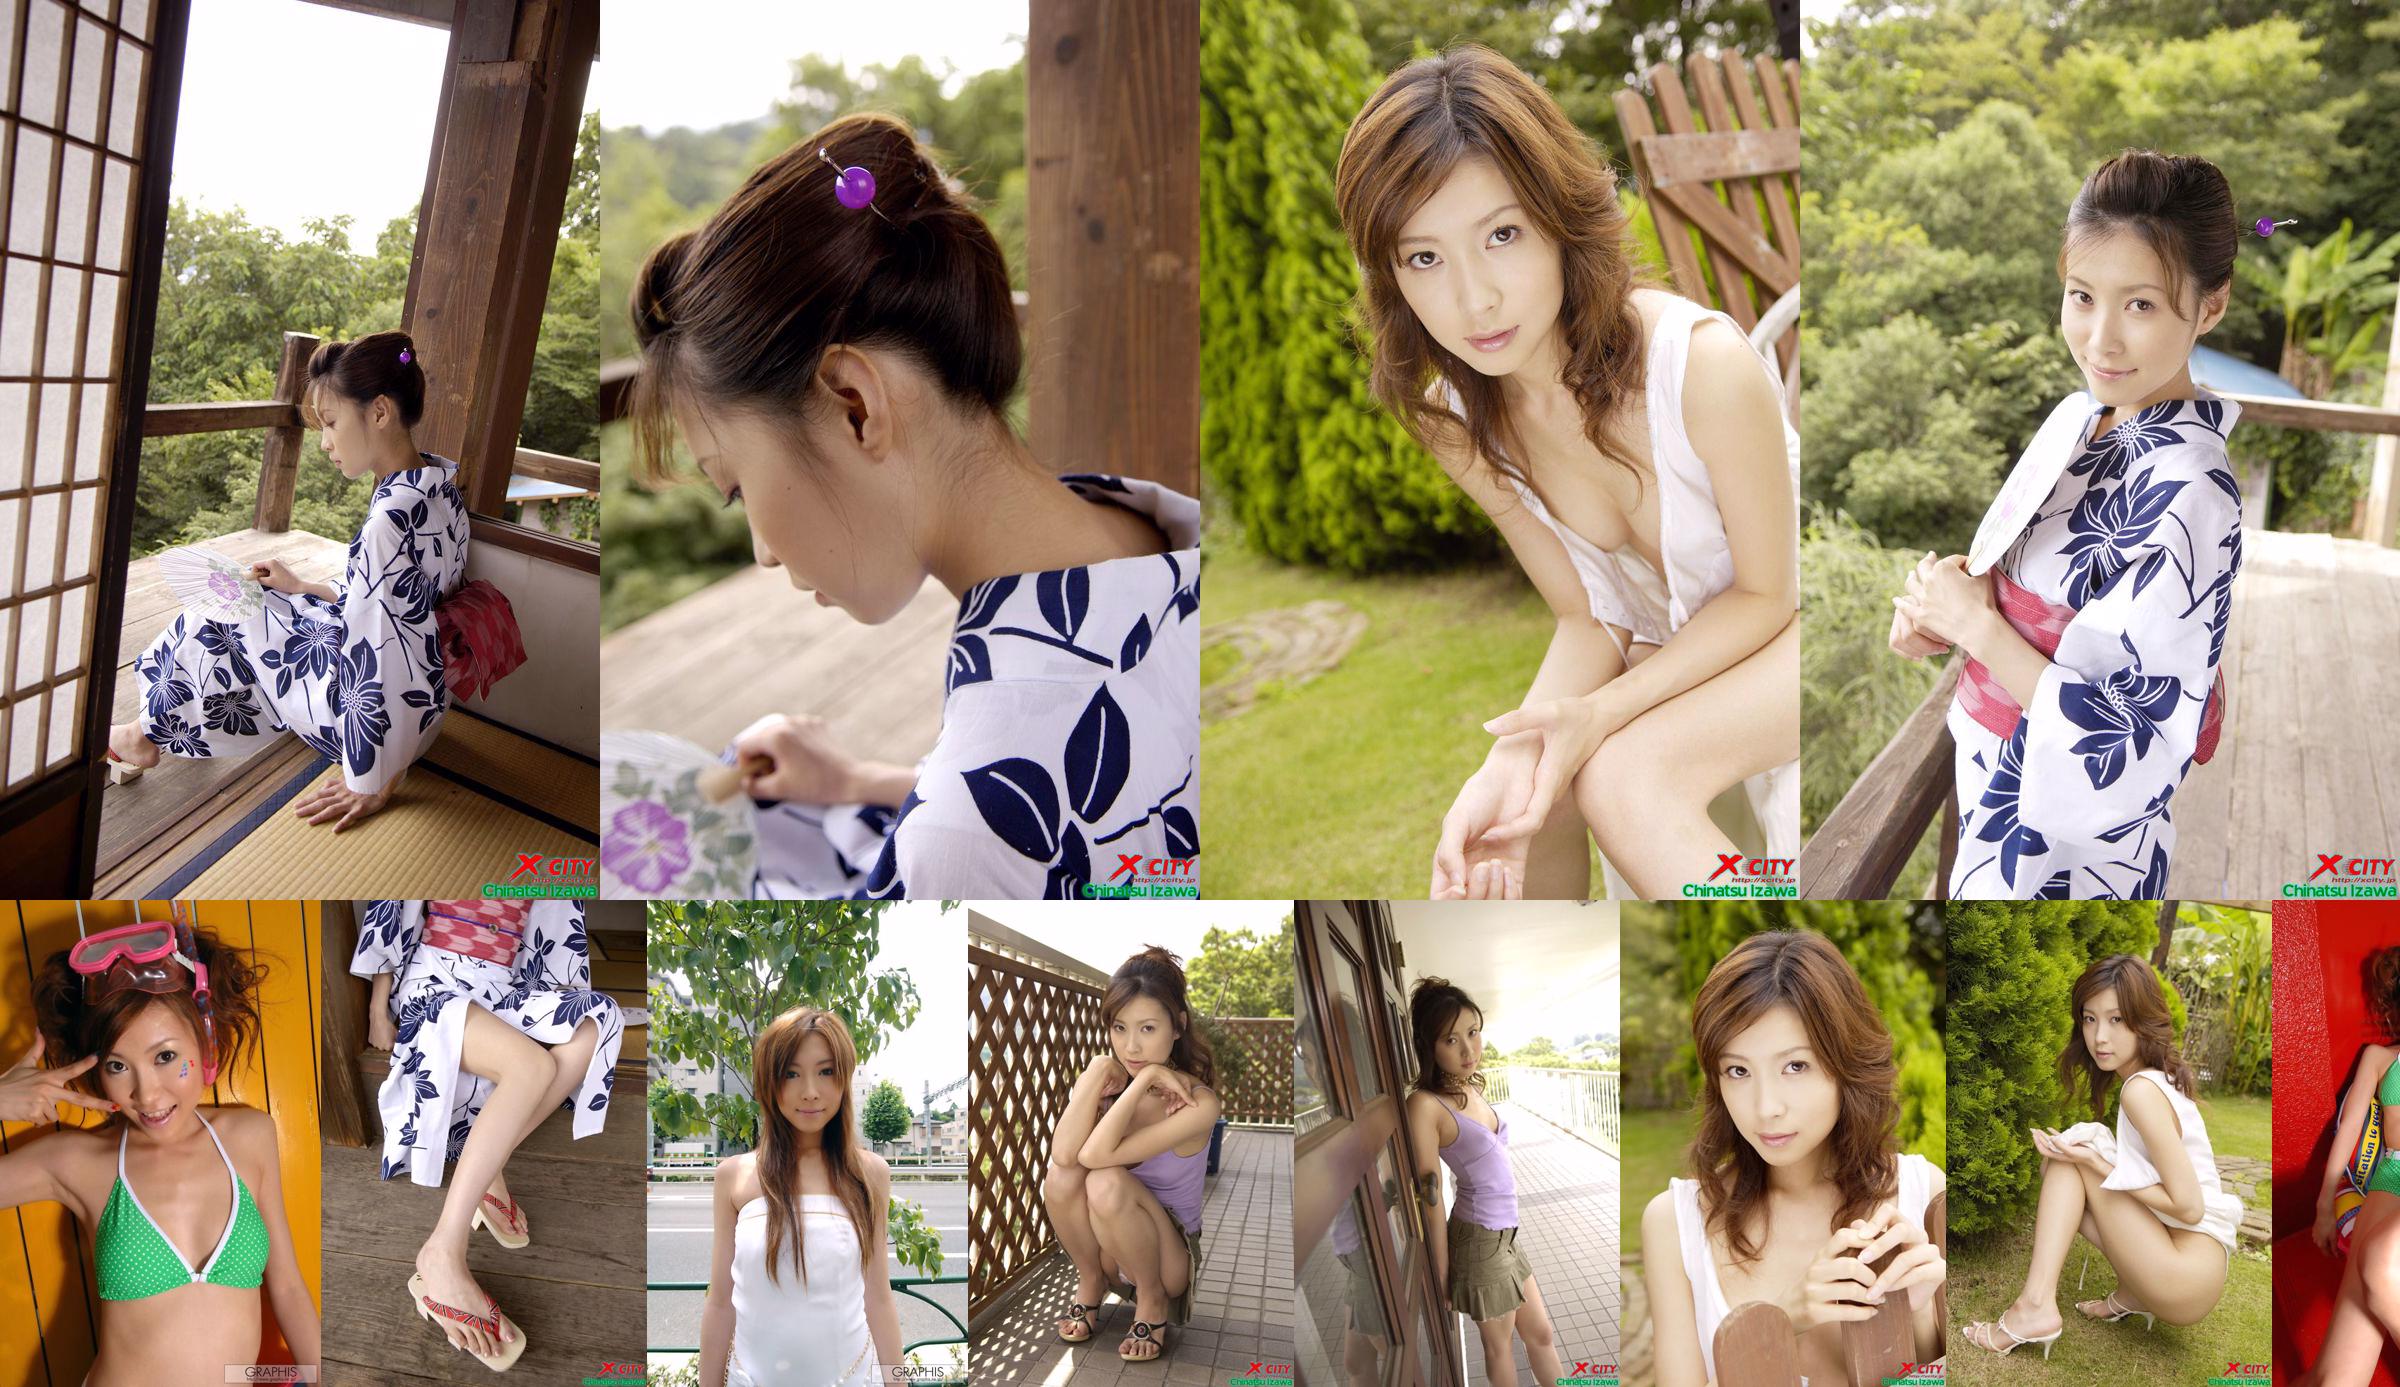 [X-City] WEB No.020 Izawa Chika "Secret Summer" No.01ac57 Trang 1